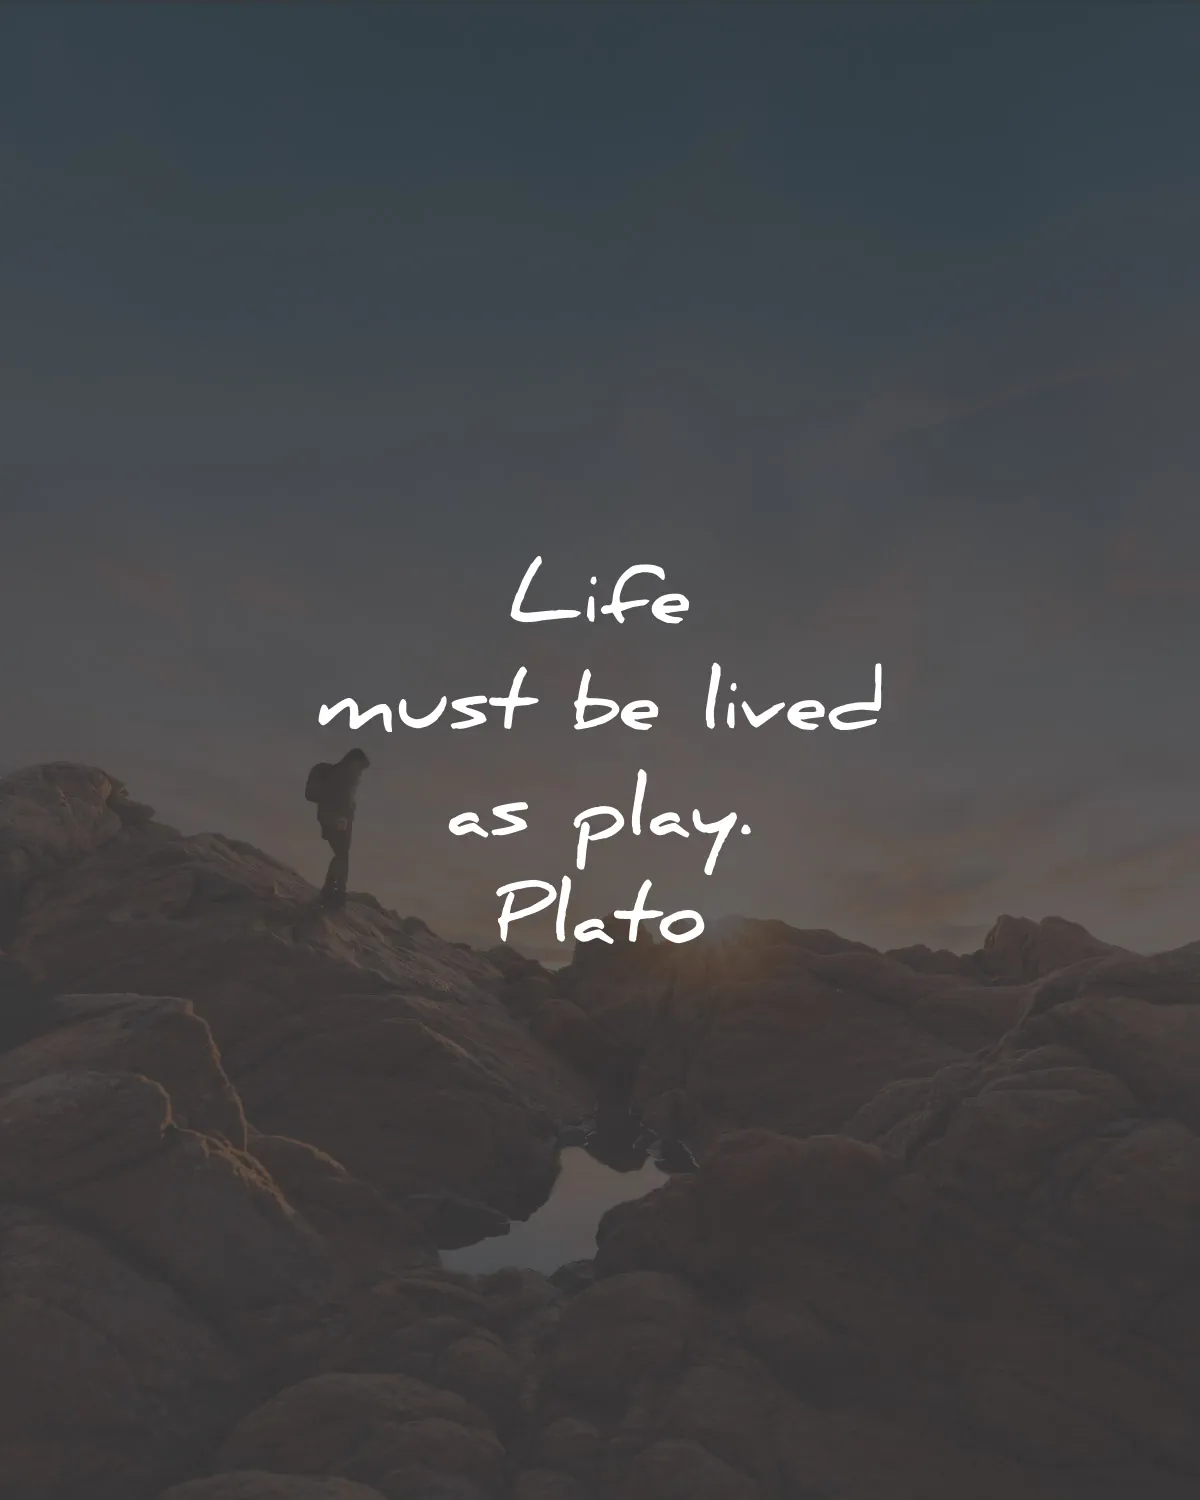 plato quotes life lived play wisdom